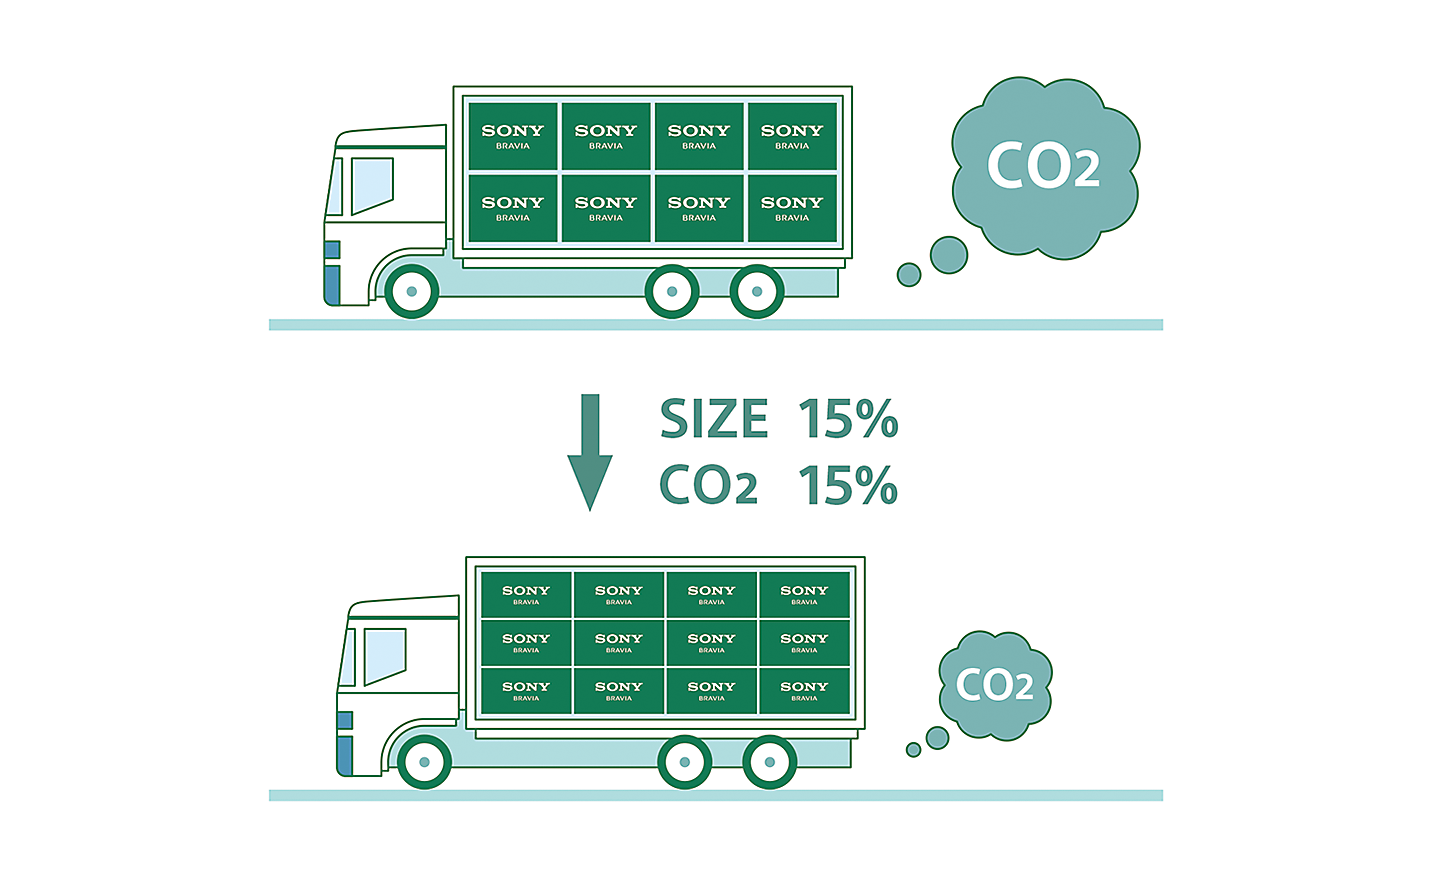 Grafički prikaz dva kamiona koji ilustruje kako smanjenje pakovanja pomaže smanjenju emisije CO2 tokom transporta